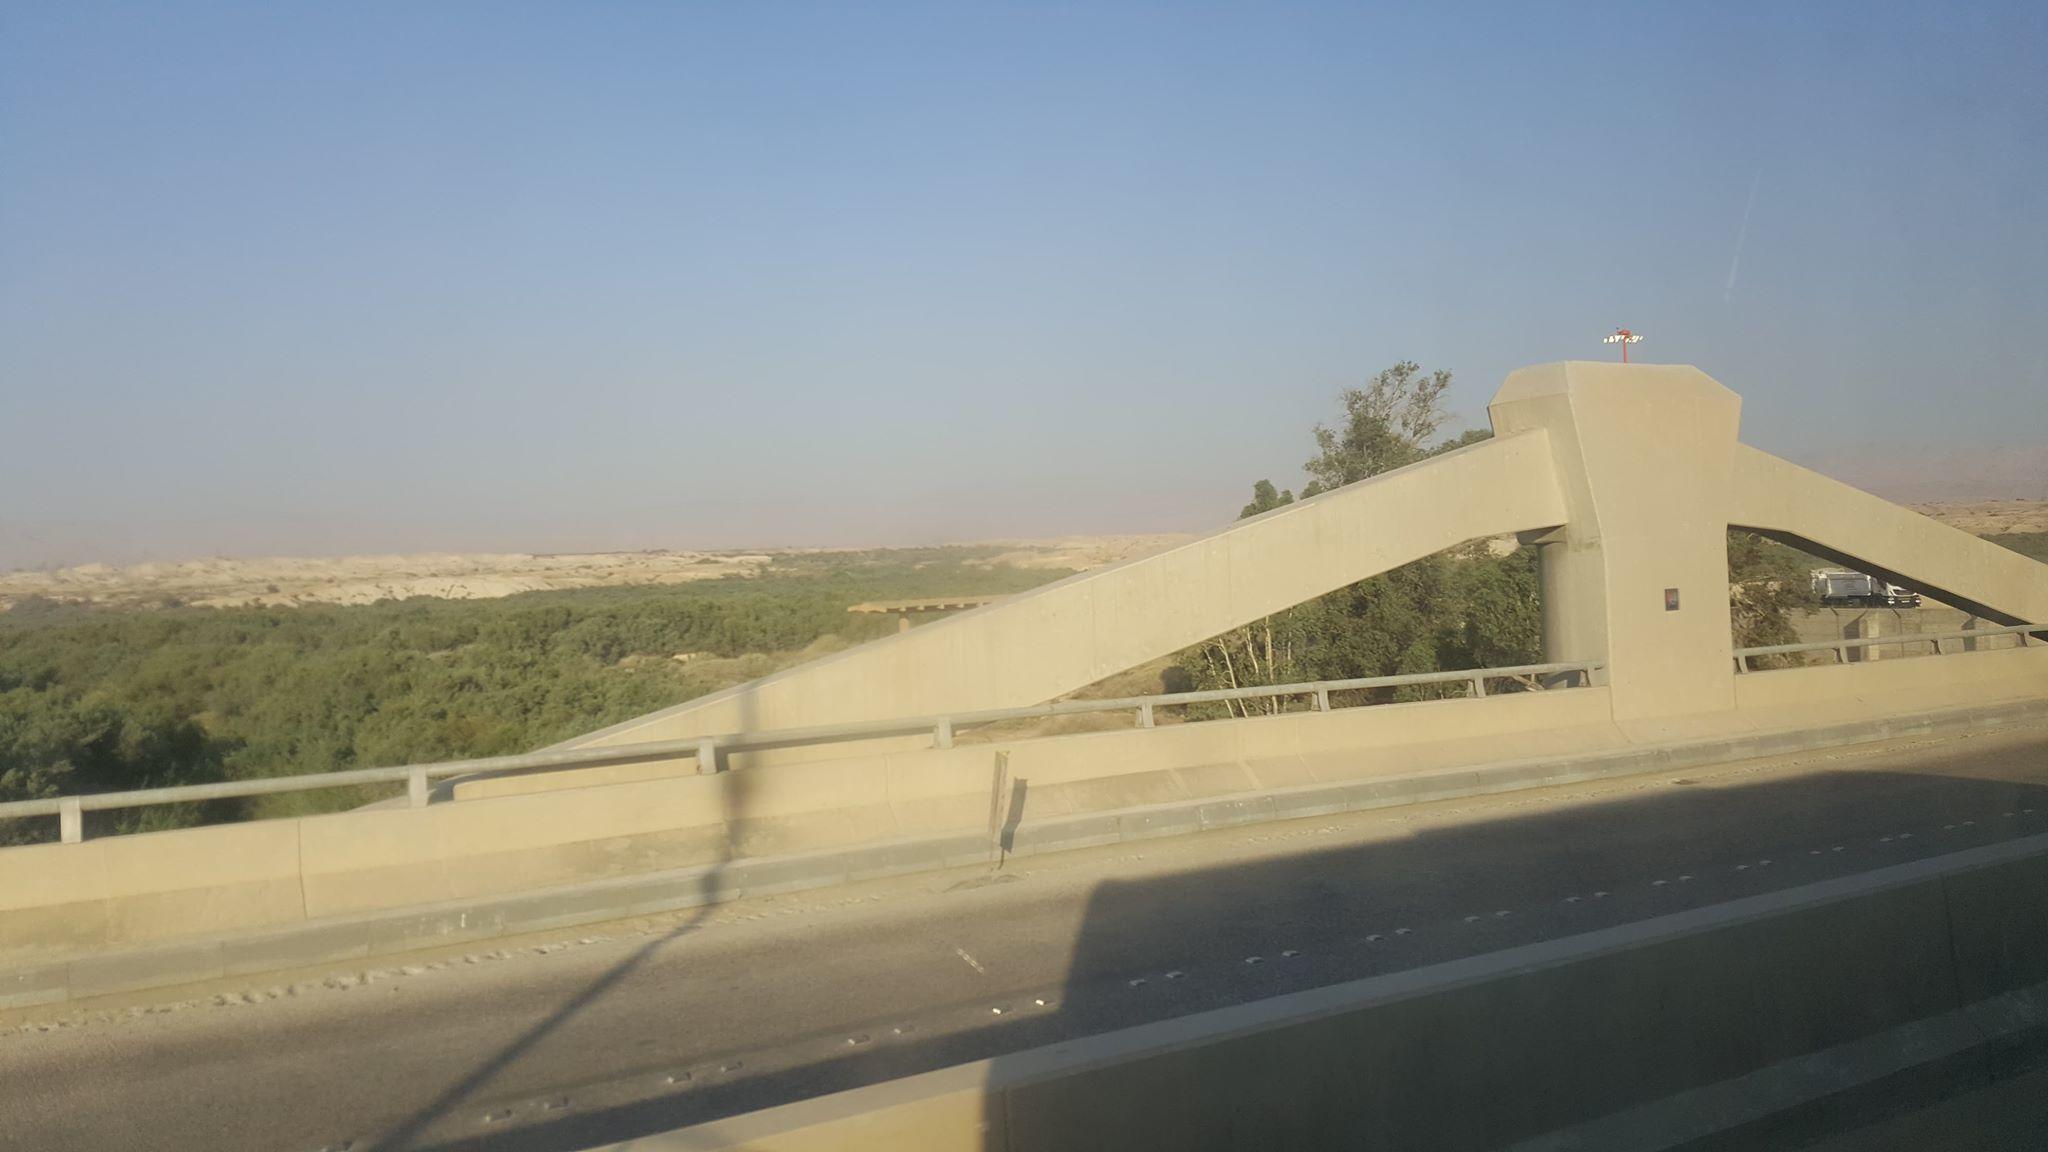 جسر الملك حسين الواصل بين الأردن والضفة الغربية المحتلة والجانب الإسرائيلي. (المملكة)